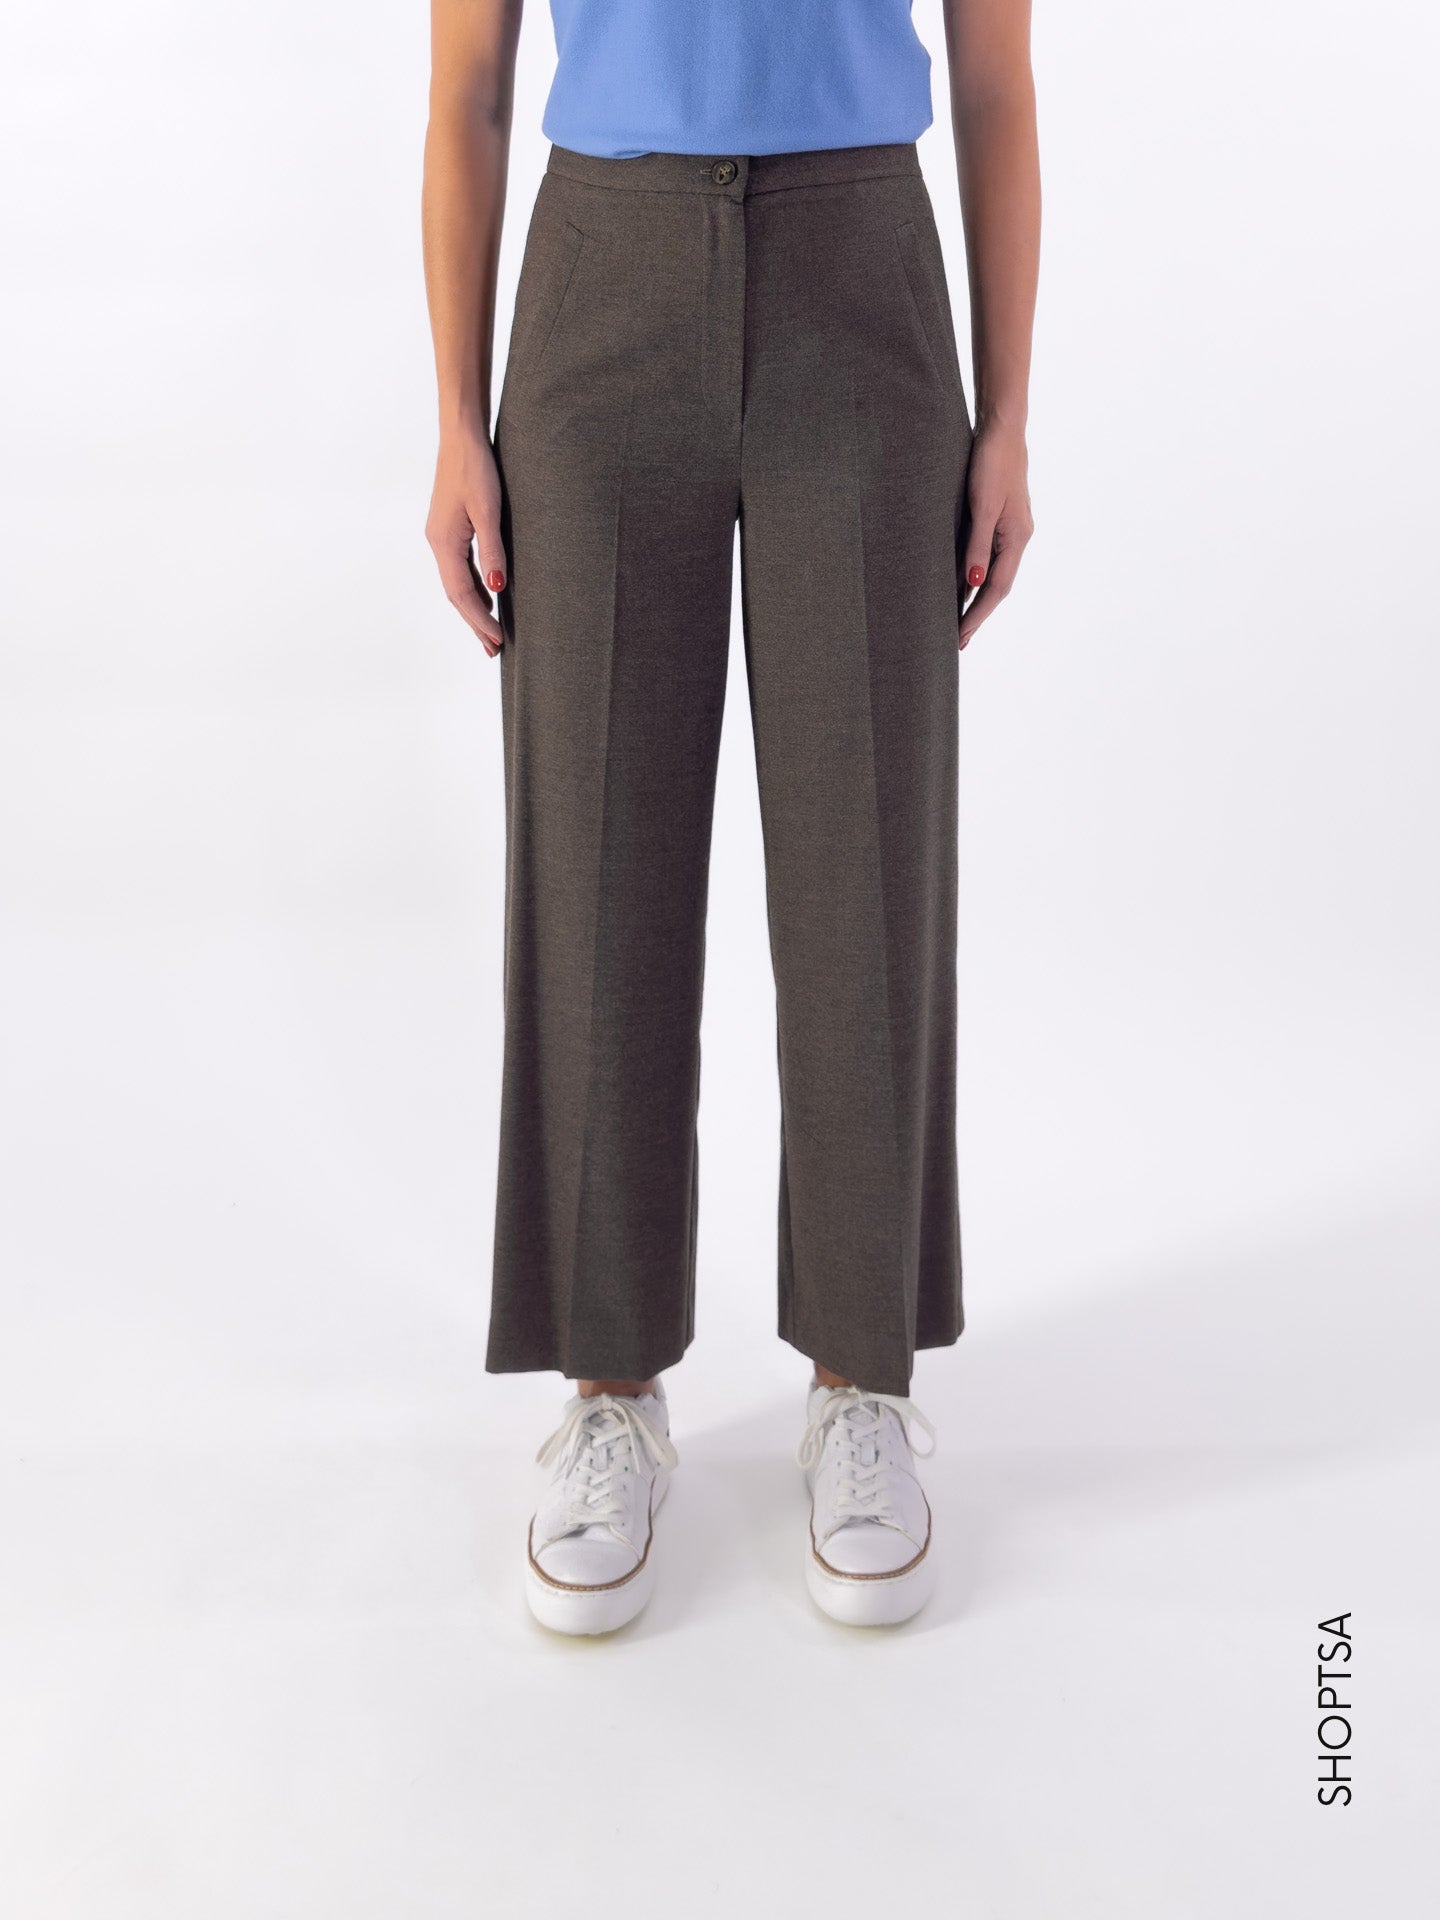 Pantalone flanella con elastico TITANO - EMME Marella